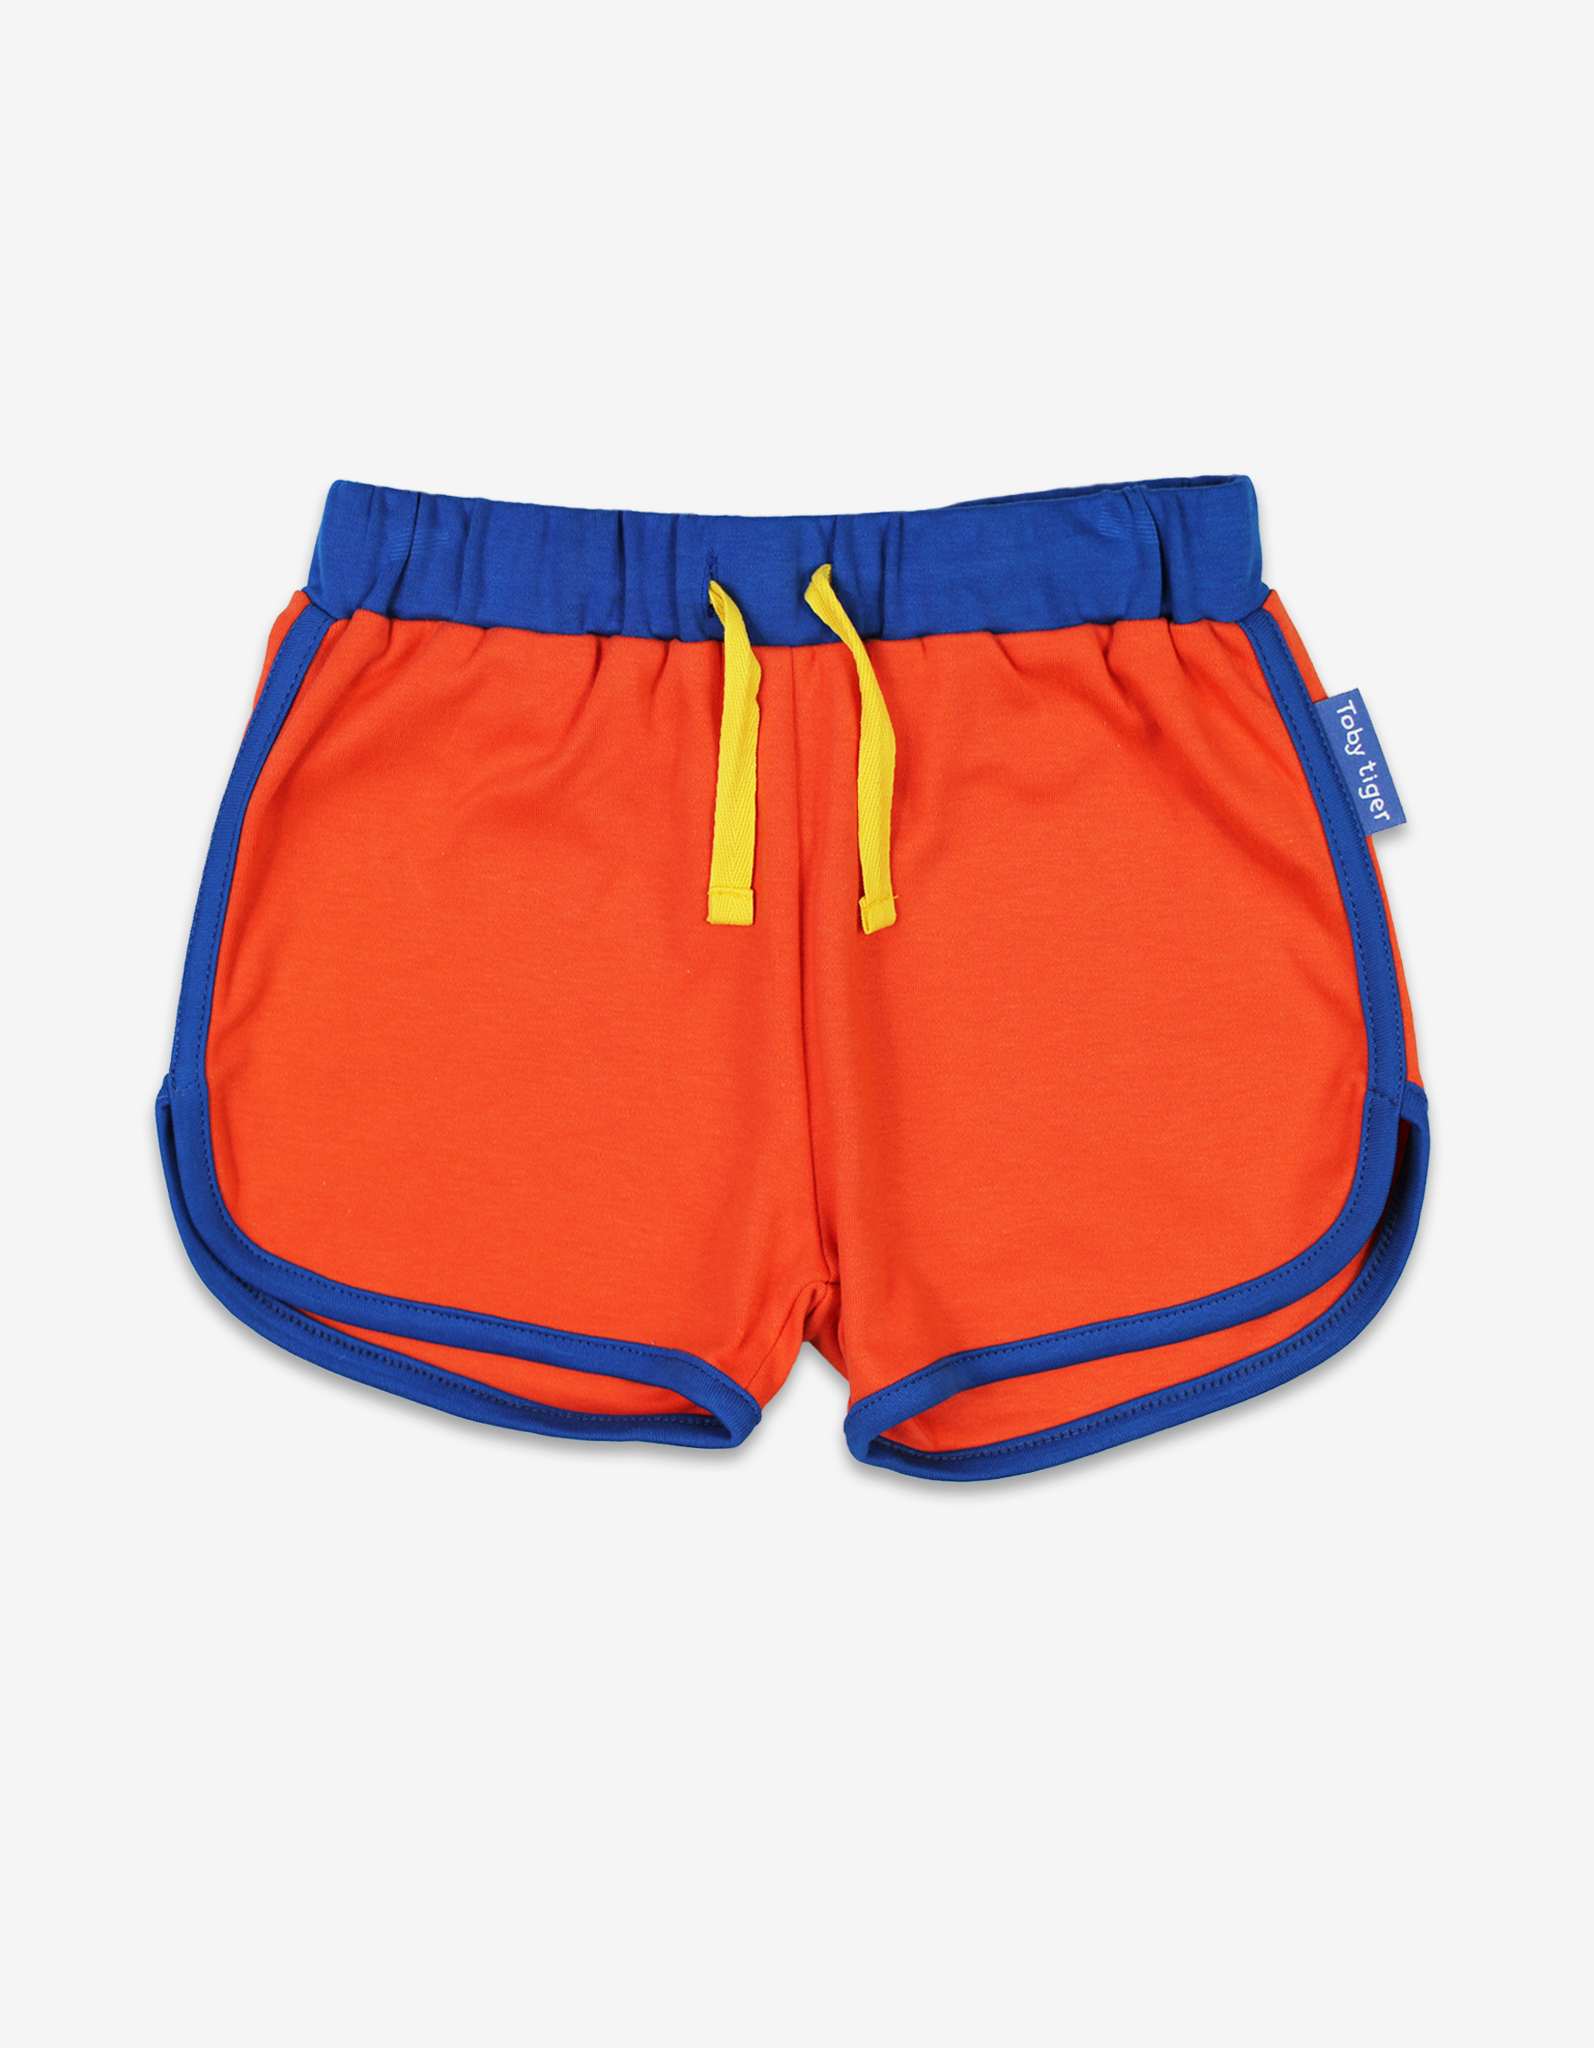 Organic Orange Running Shorts - 6